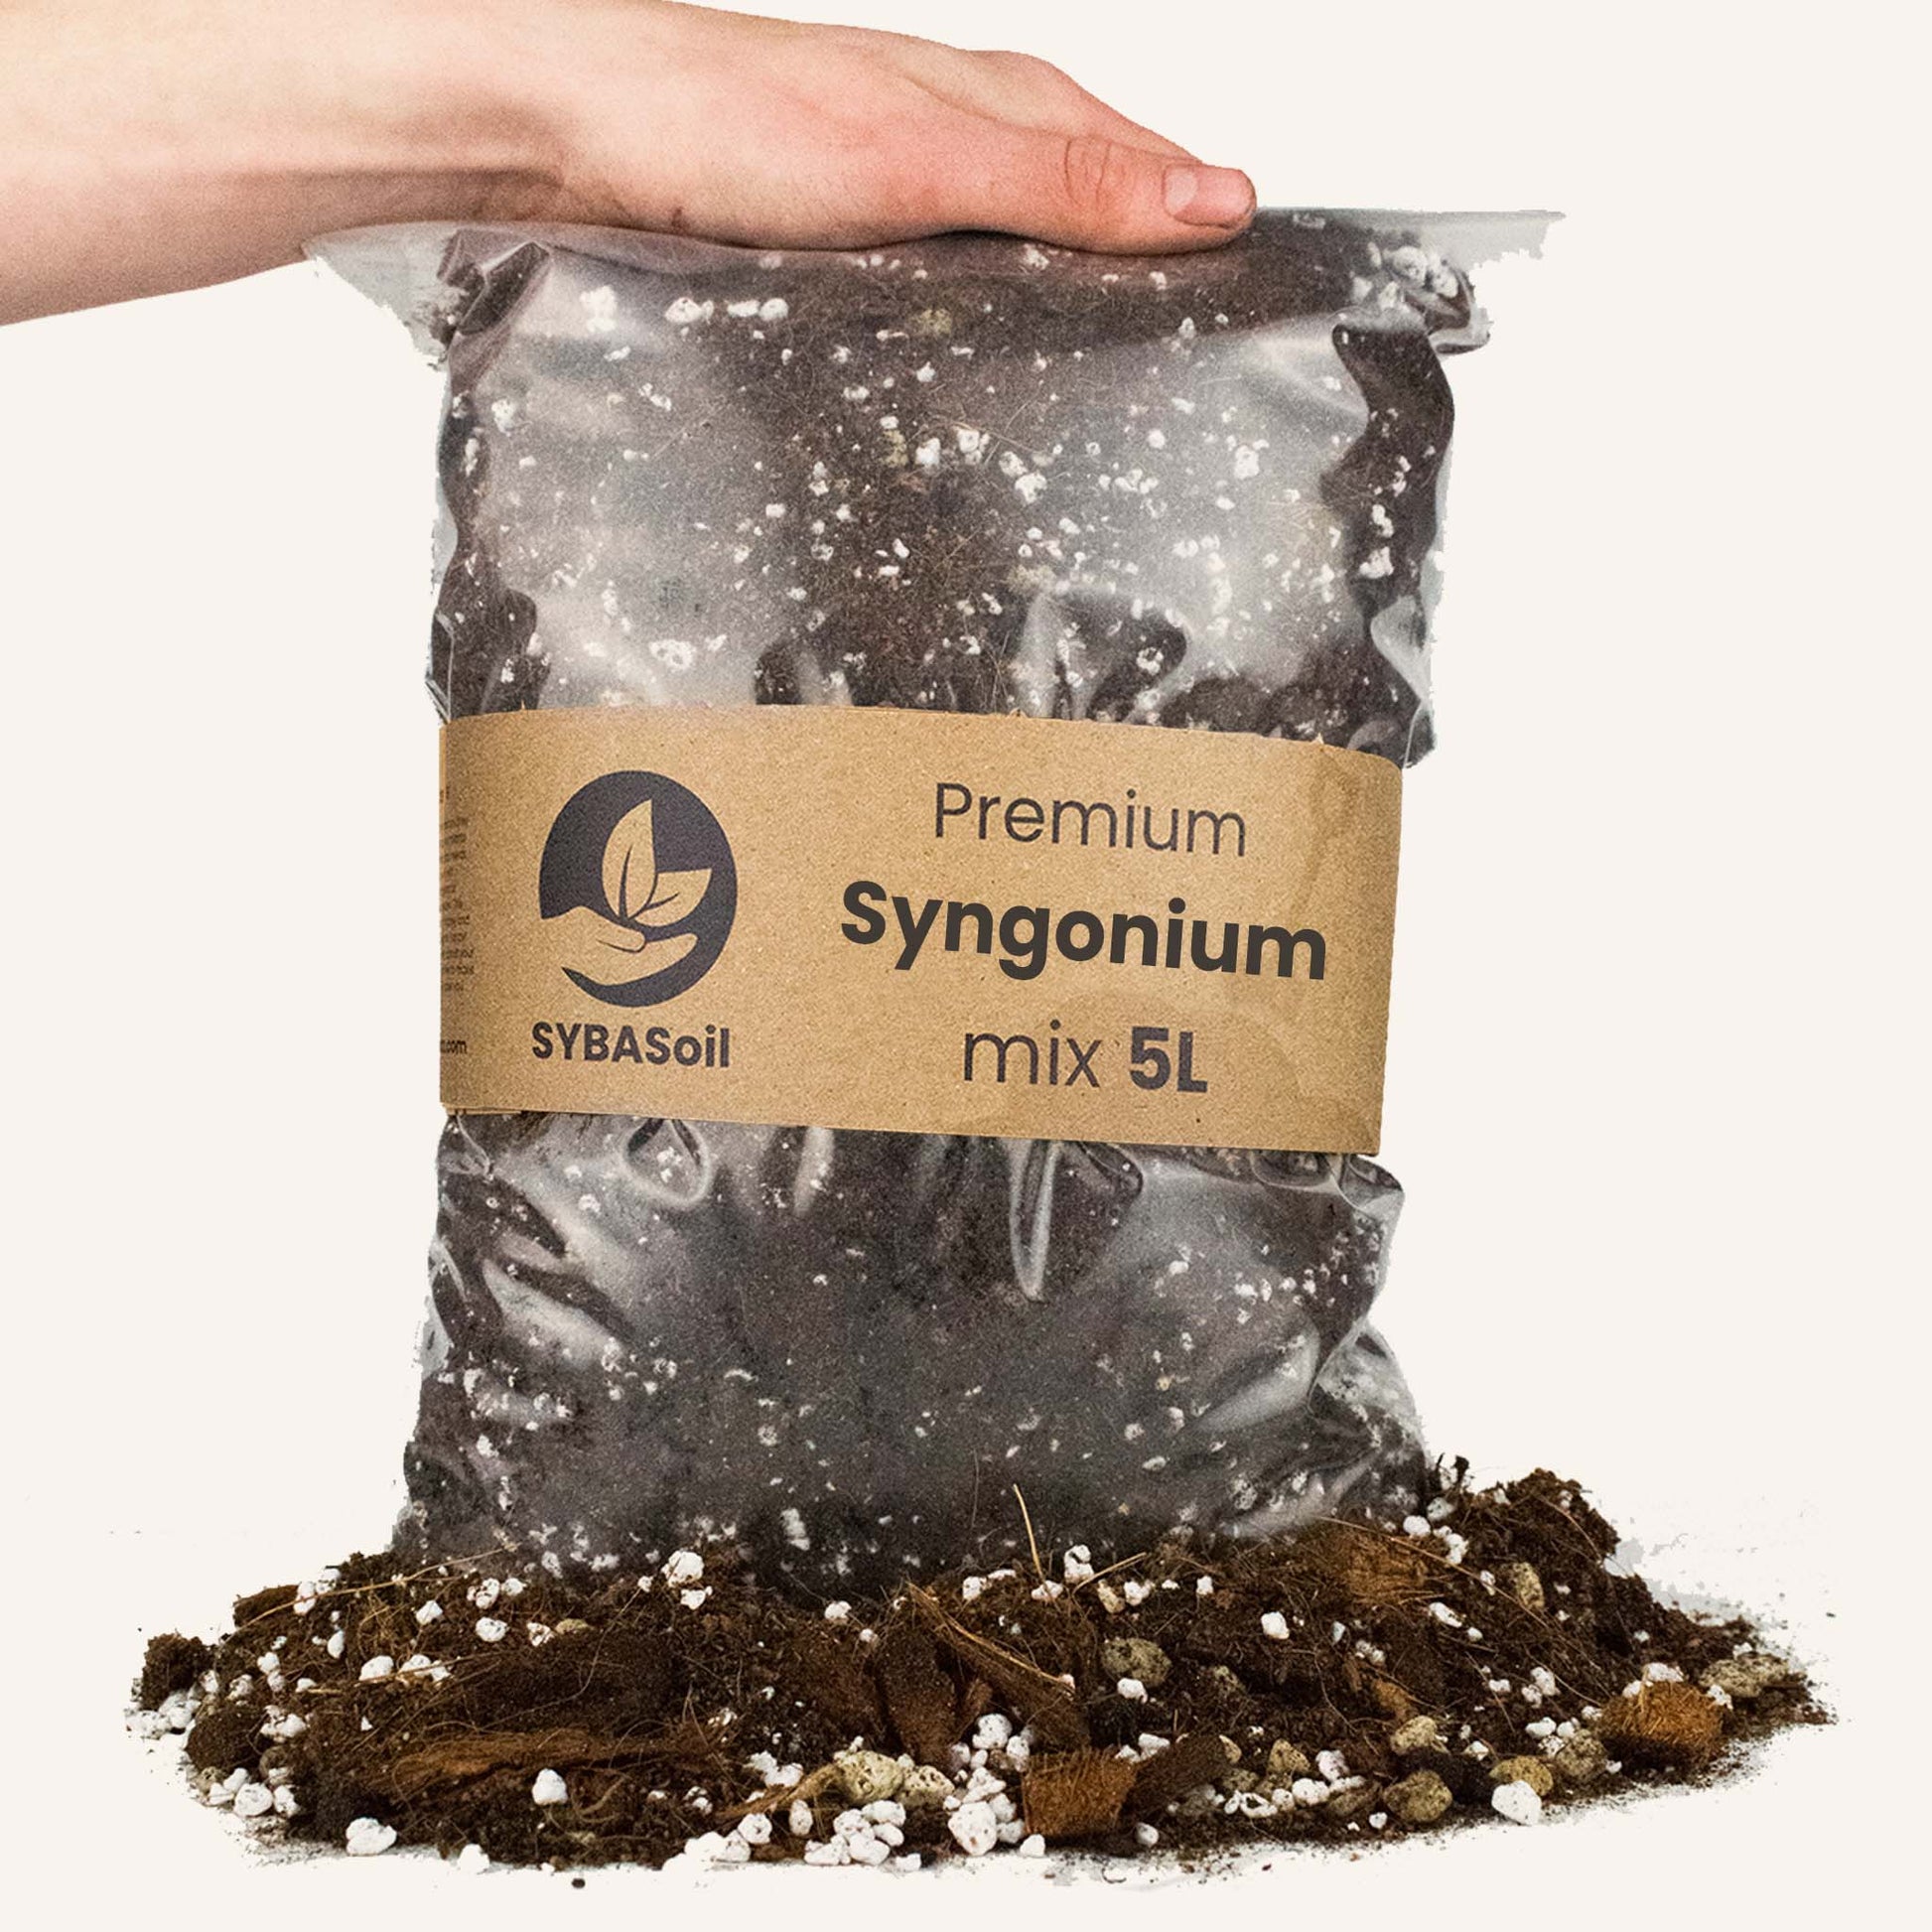 Pose med specialjord til Syngonium planter